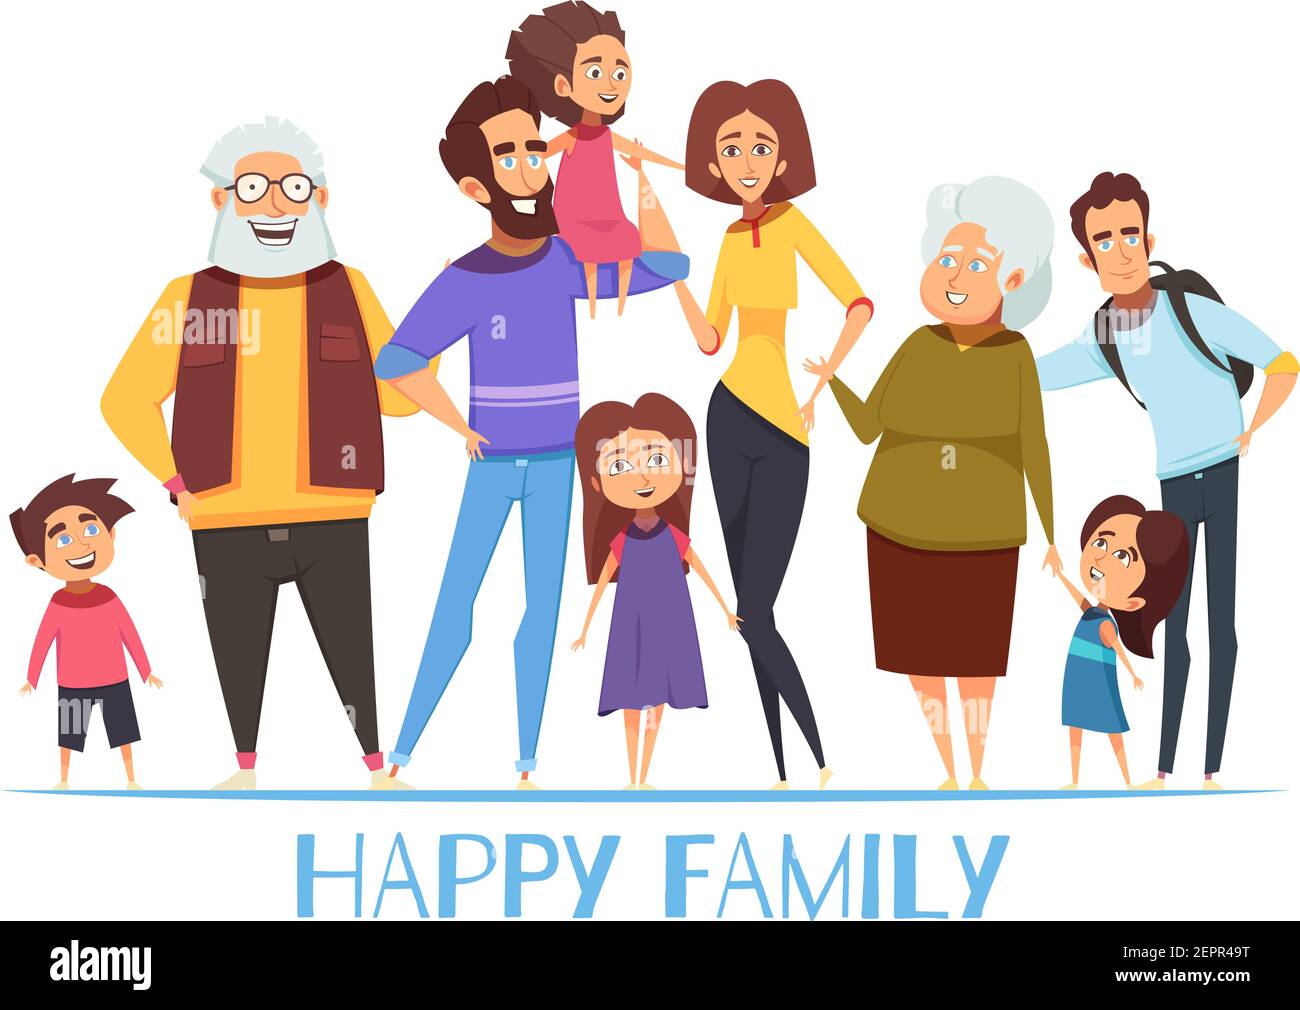 Porträt der glücklichen Familie mit Großeltern, Mama und Papa, Kinder, Onkel auf weißem Hintergrund Vektor-Illustration Stock Vektor